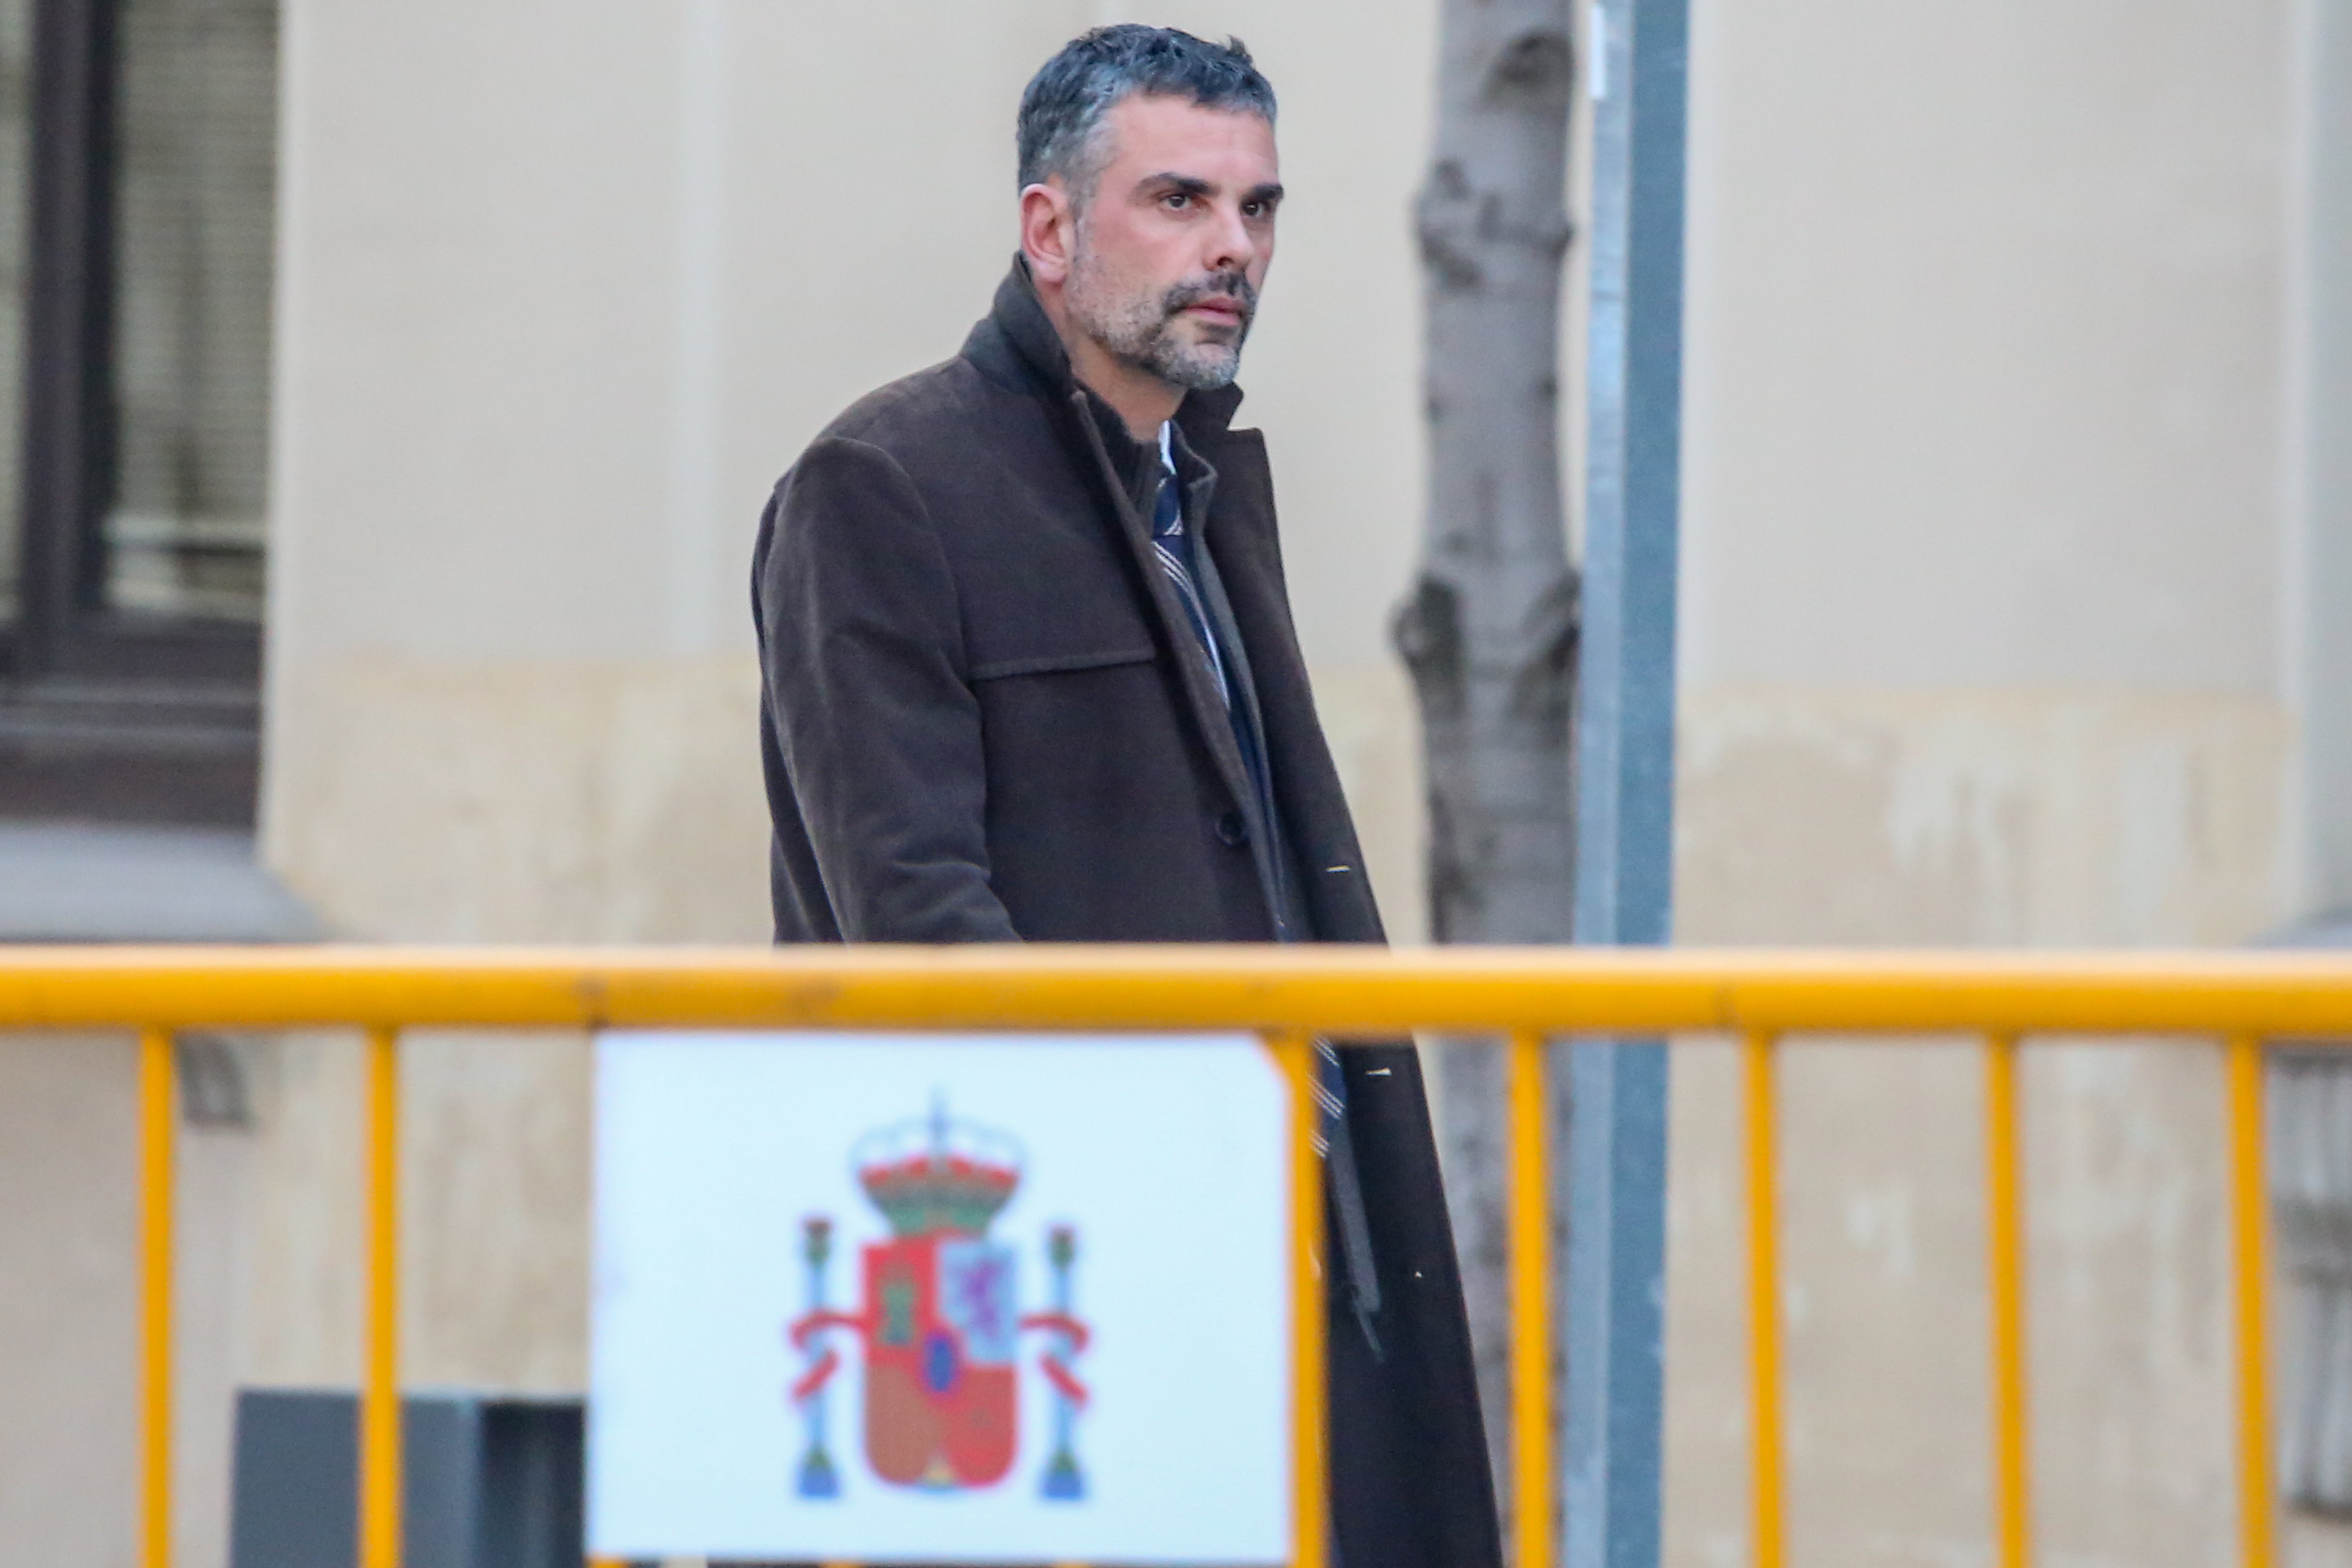 Vila acusa Torra de "sectarisme" i demana ajuda a Aragonès pel cas Sixena